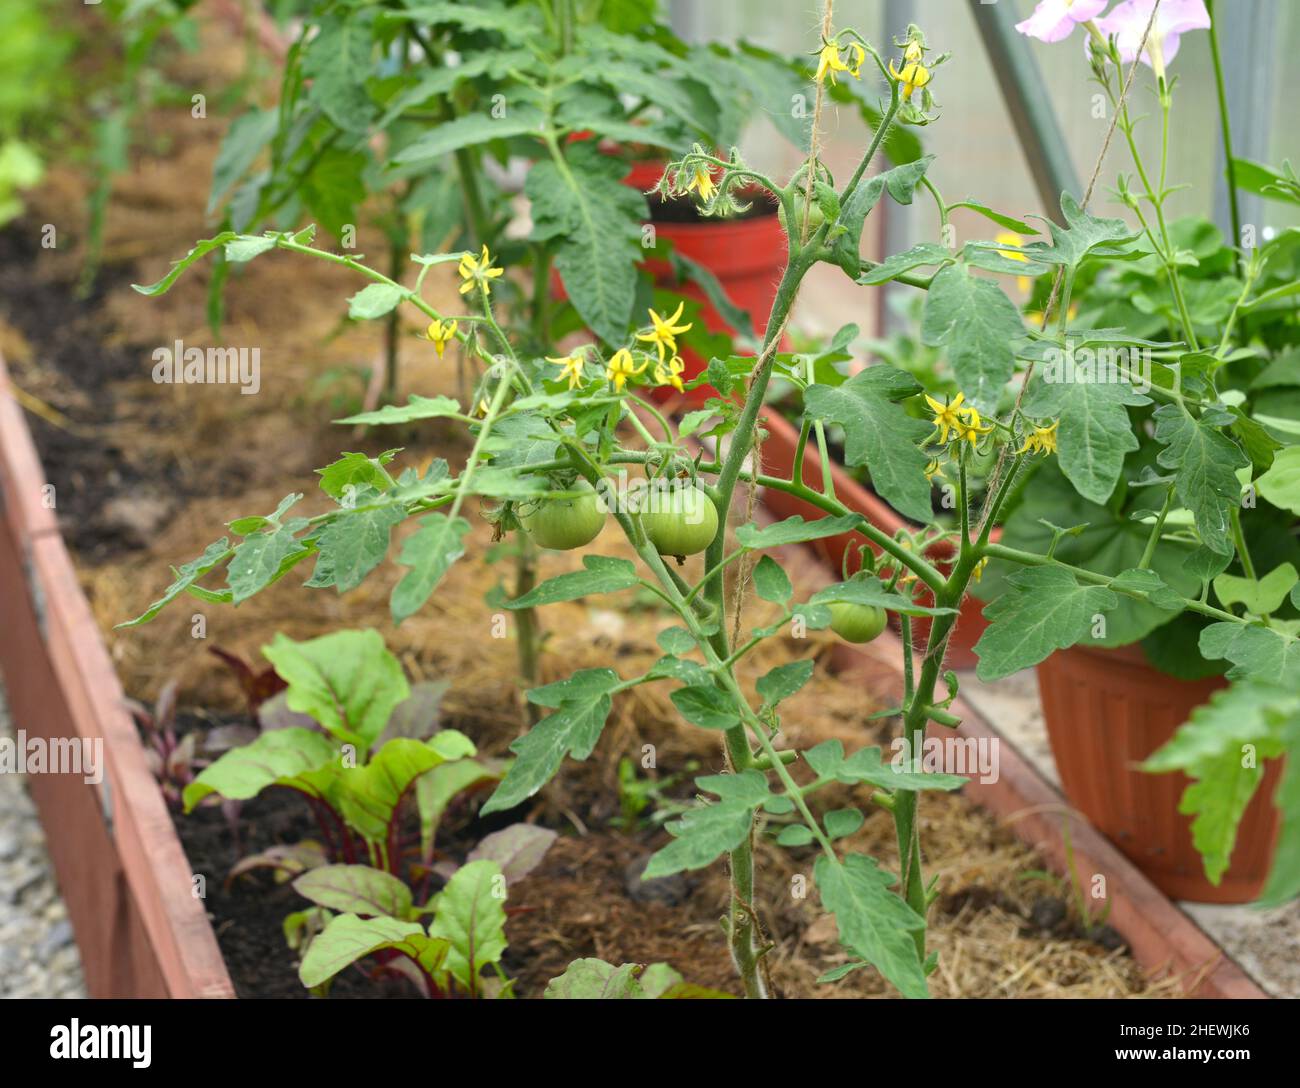 Junge Pflanze der Tomate in der Box im Gewächshaus oder Treibhaus. Vintage botanischen Hintergrund mit Pflanzen, Home Hobby Stillleben mit Gartenobjekten und Stockfoto